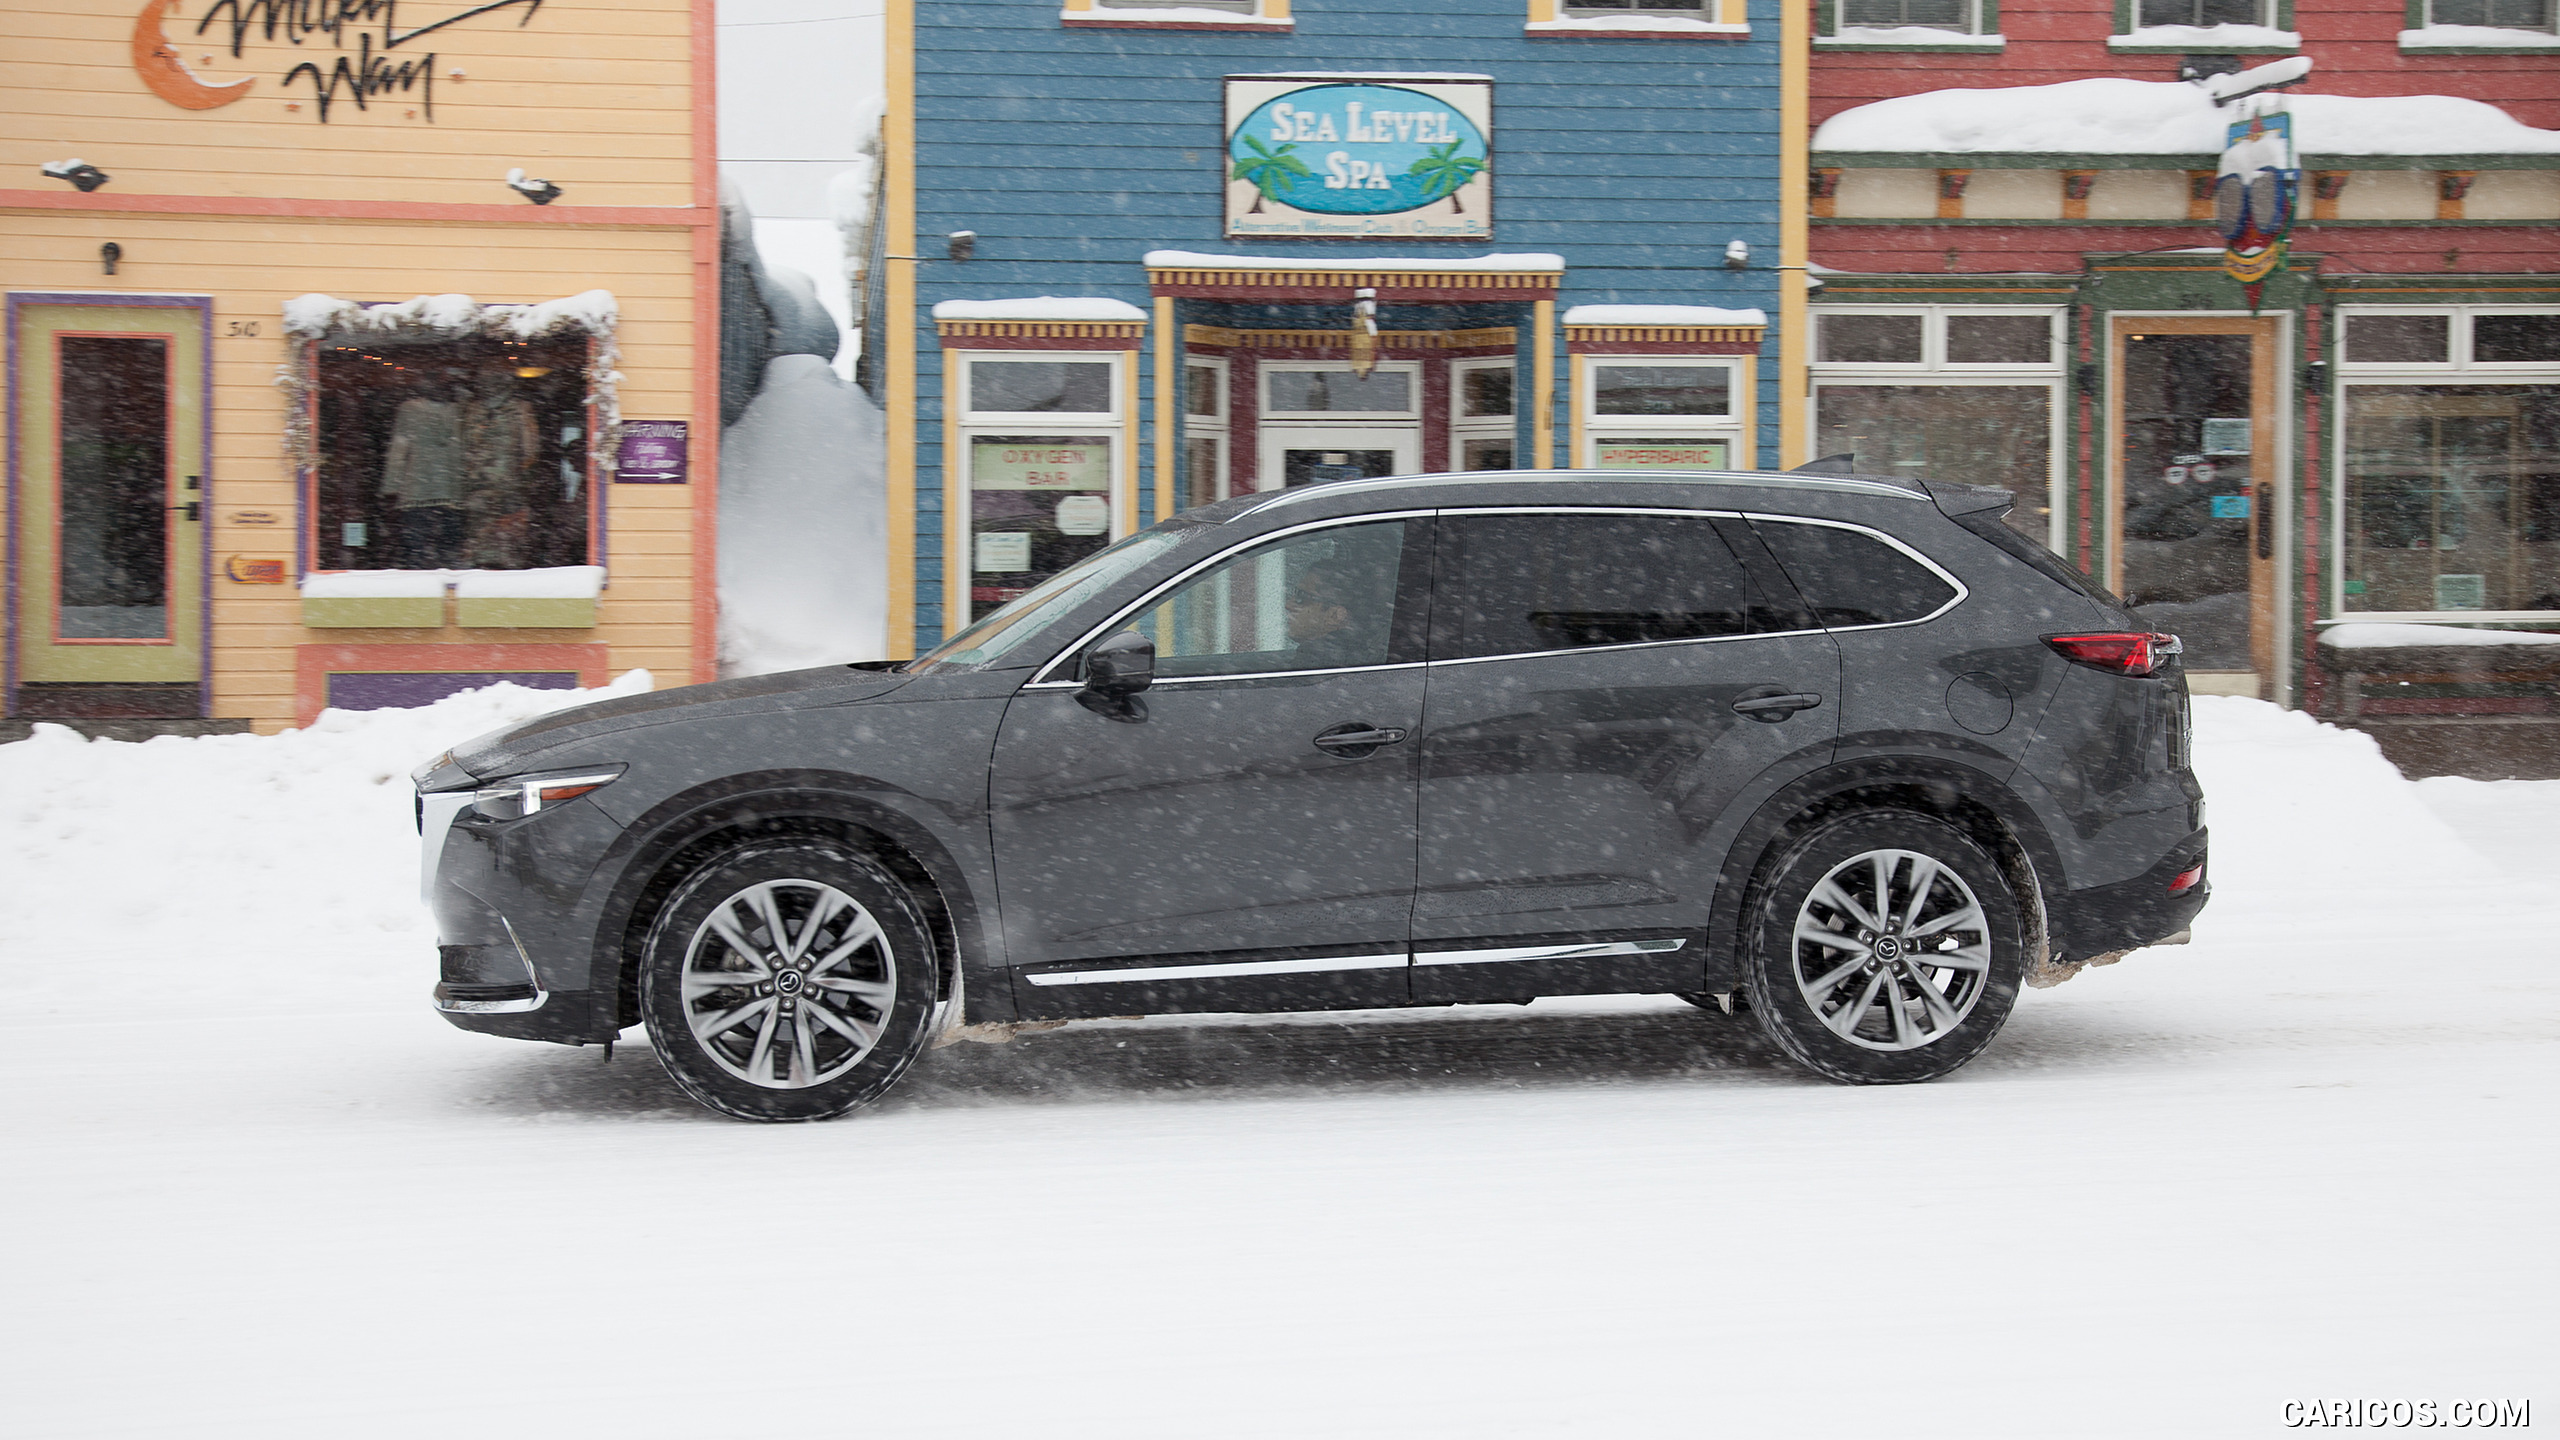 2016 Mazda CX-9 in Snow - Side, #56 of 69